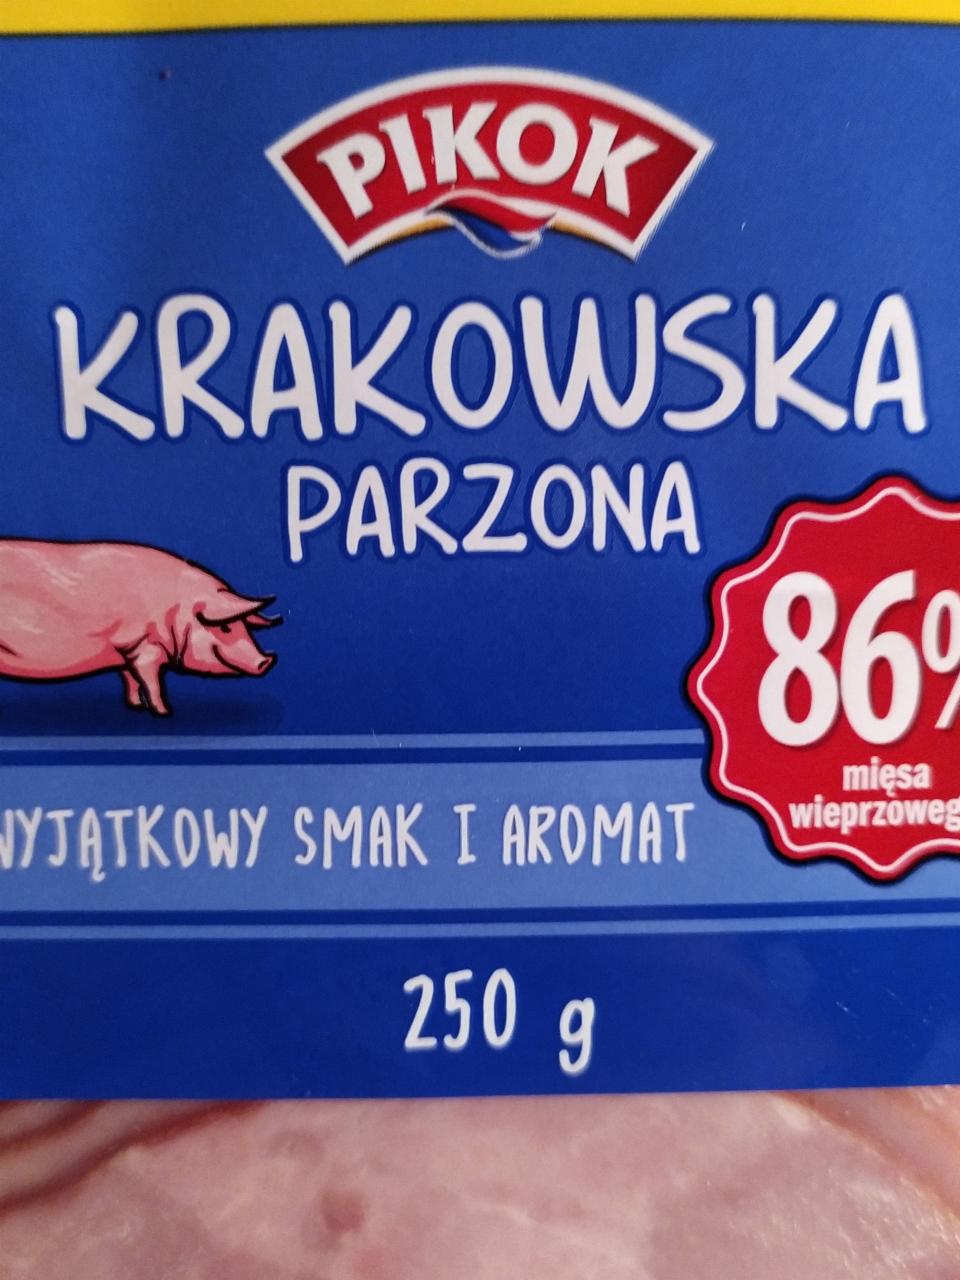 Zdjęcia - Krakowska parzona 86% mięsa Pikok